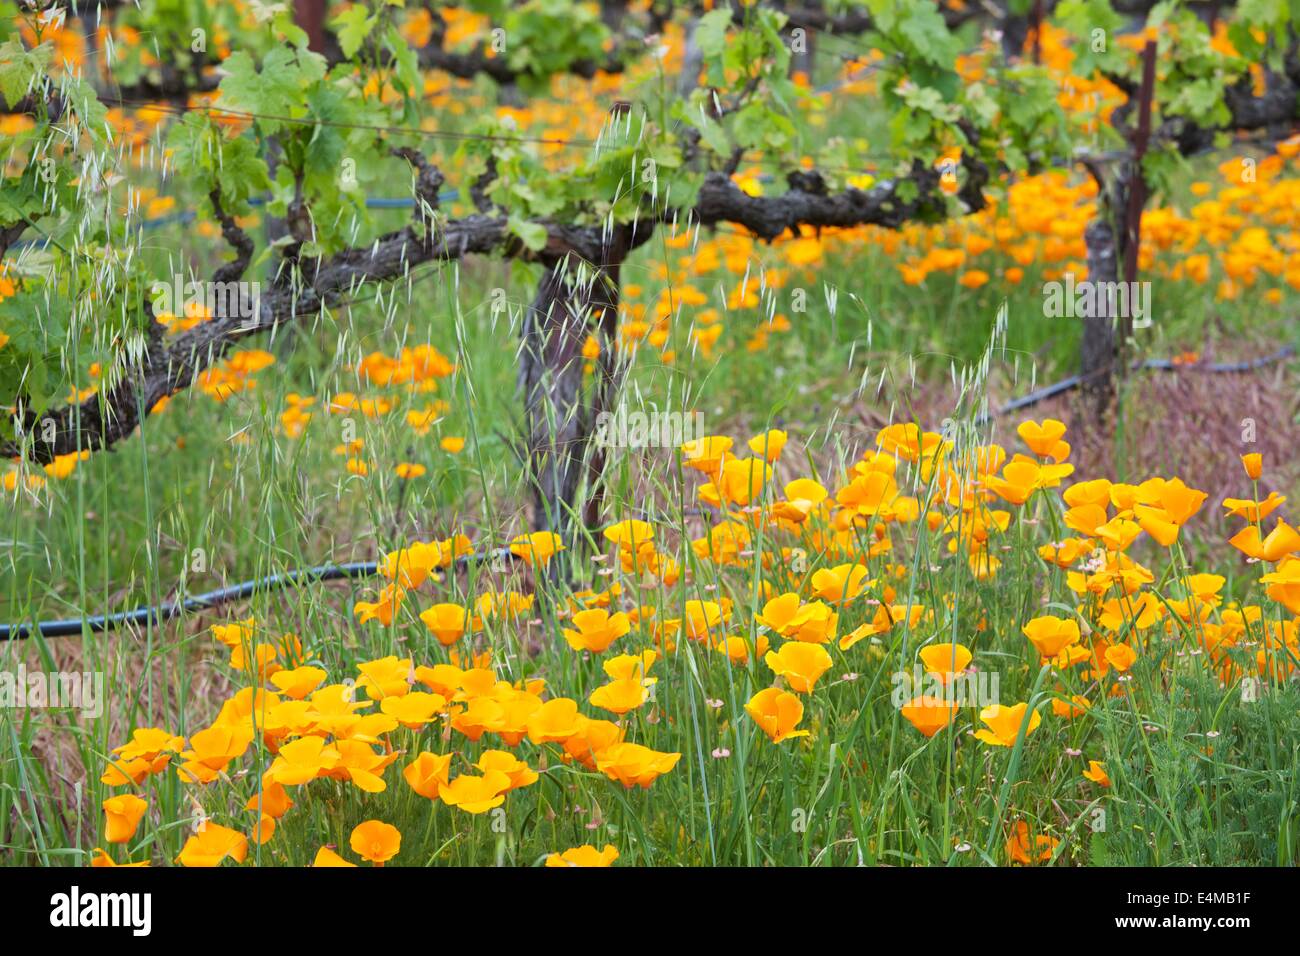 La molla nella Sonoma nella Napa Valley Wine Country nel nord della California. Foto Stock